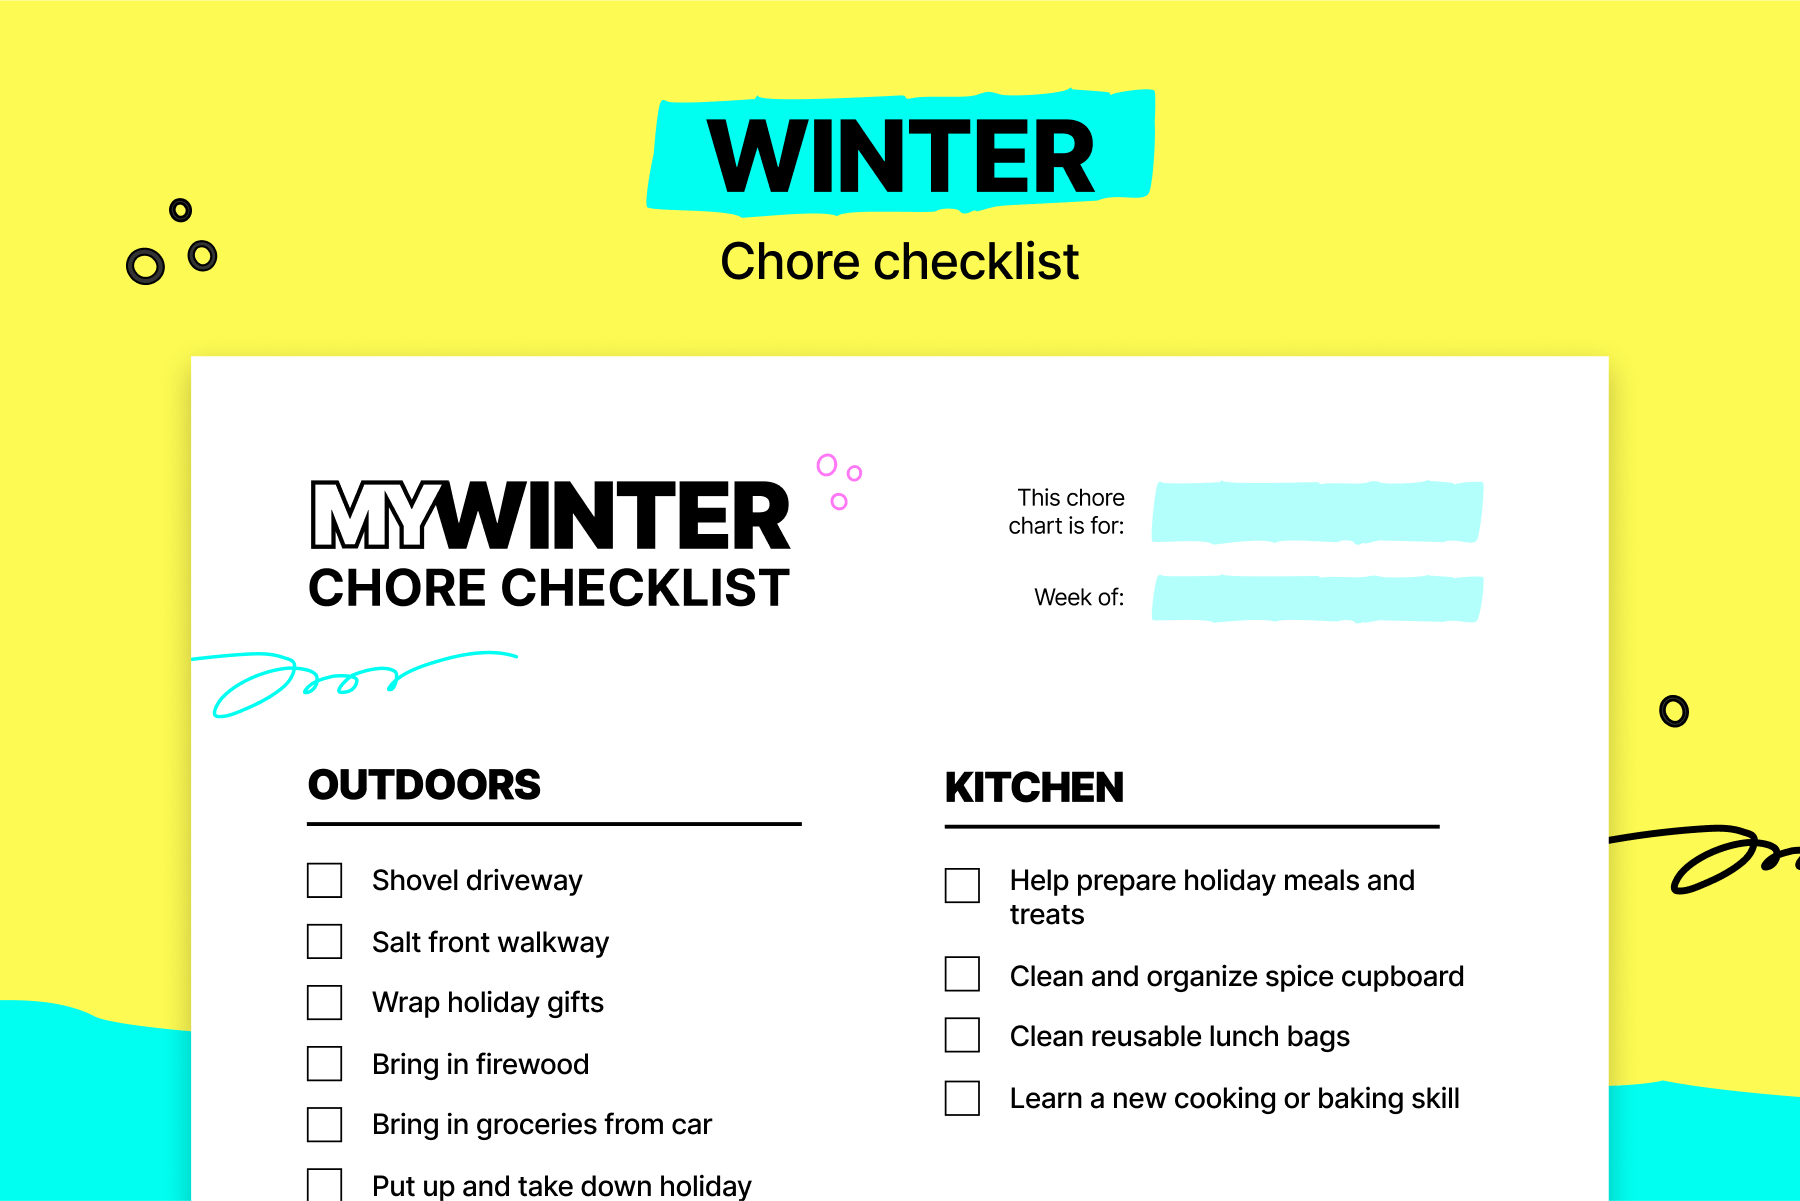 Winter chore checklist 